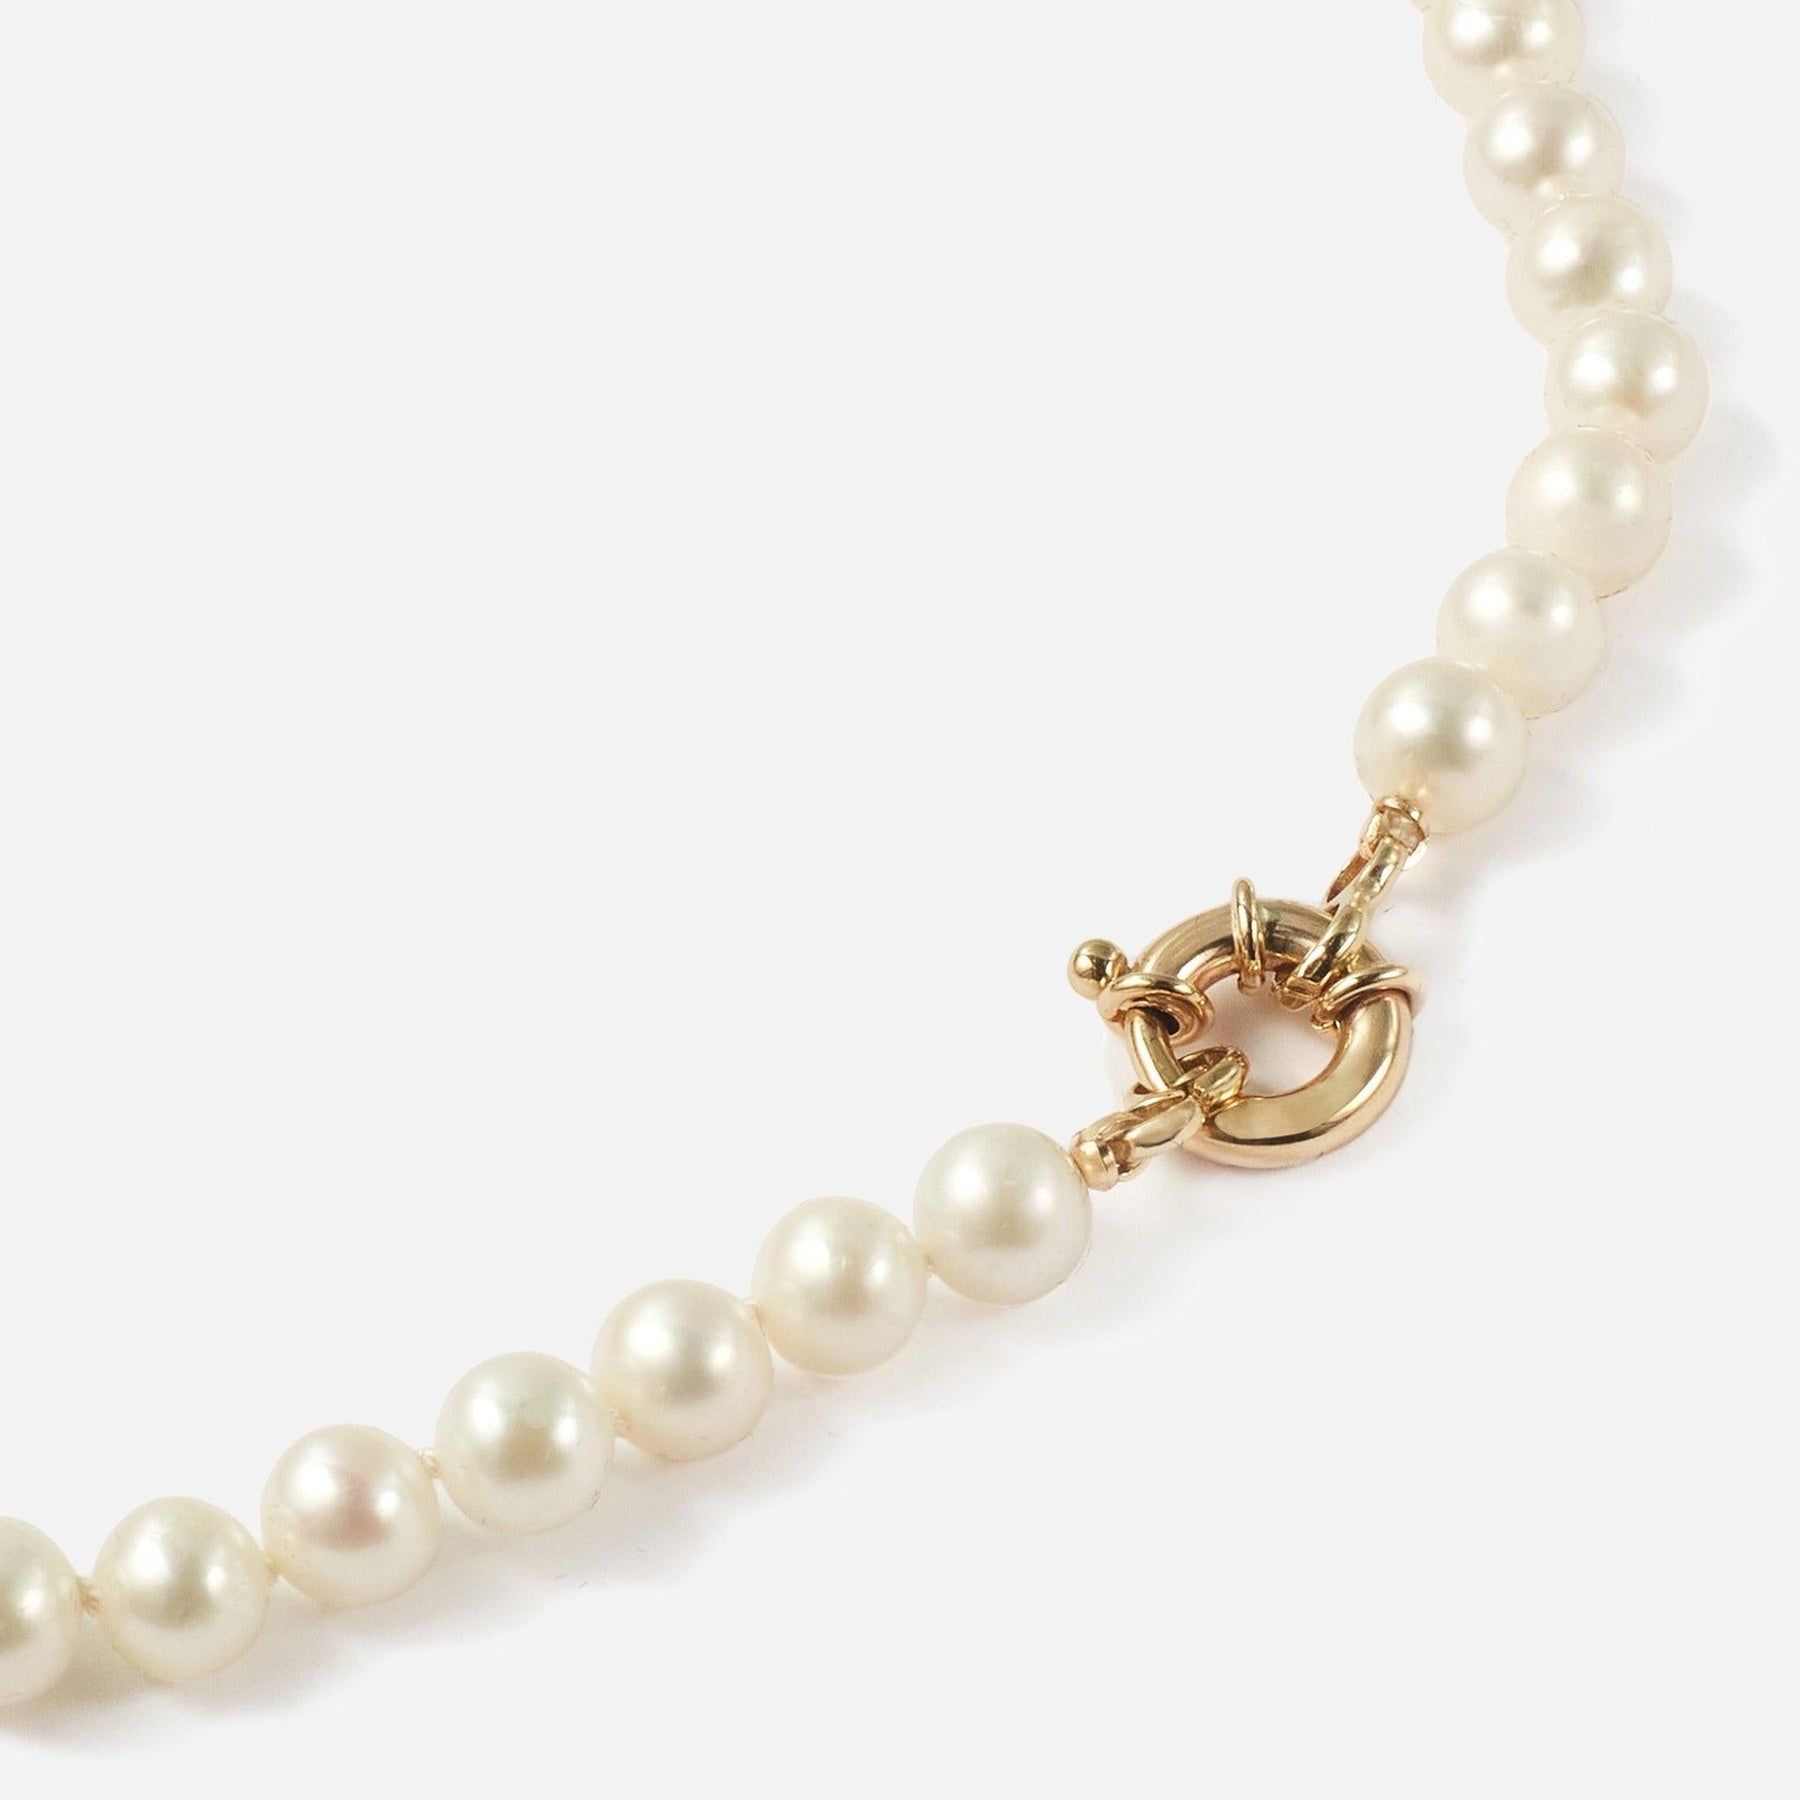 Encirkled Jewelry Freshwater Pearl Necklace 2